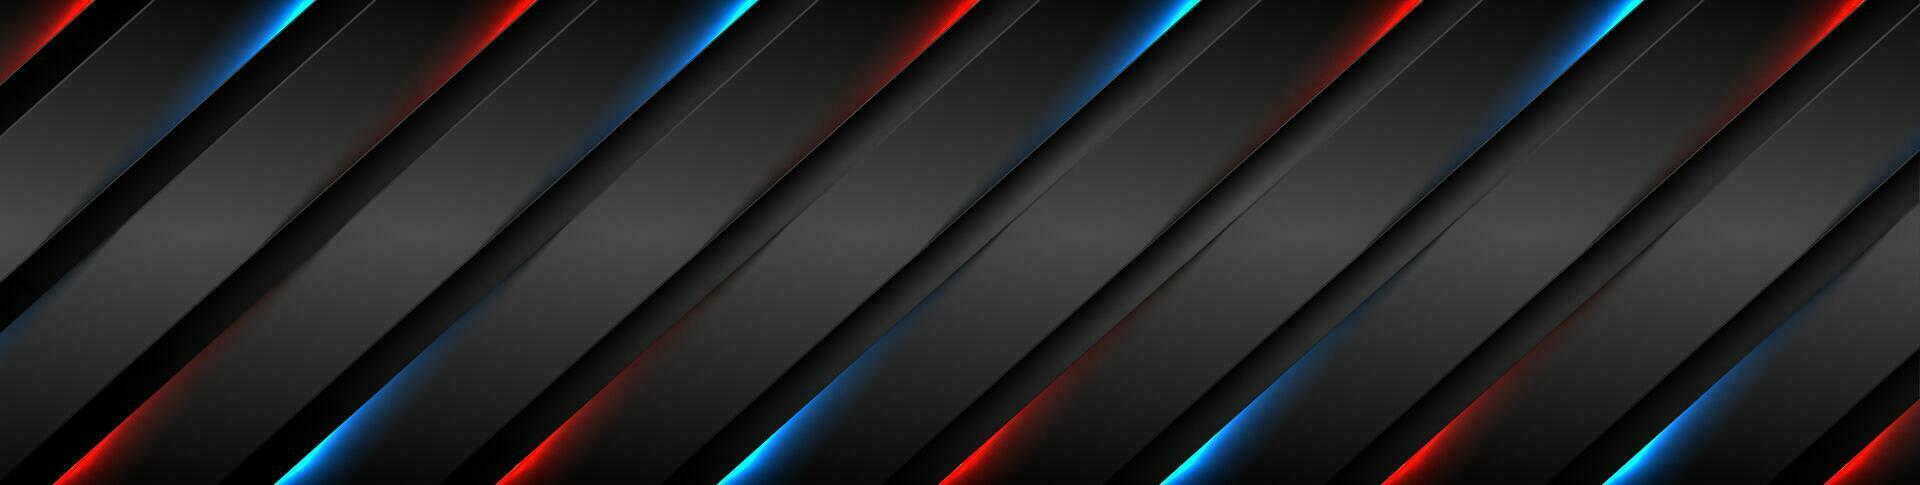 abstrakt schwarz Streifen mit Blau rot Neon- glühend Licht vektor